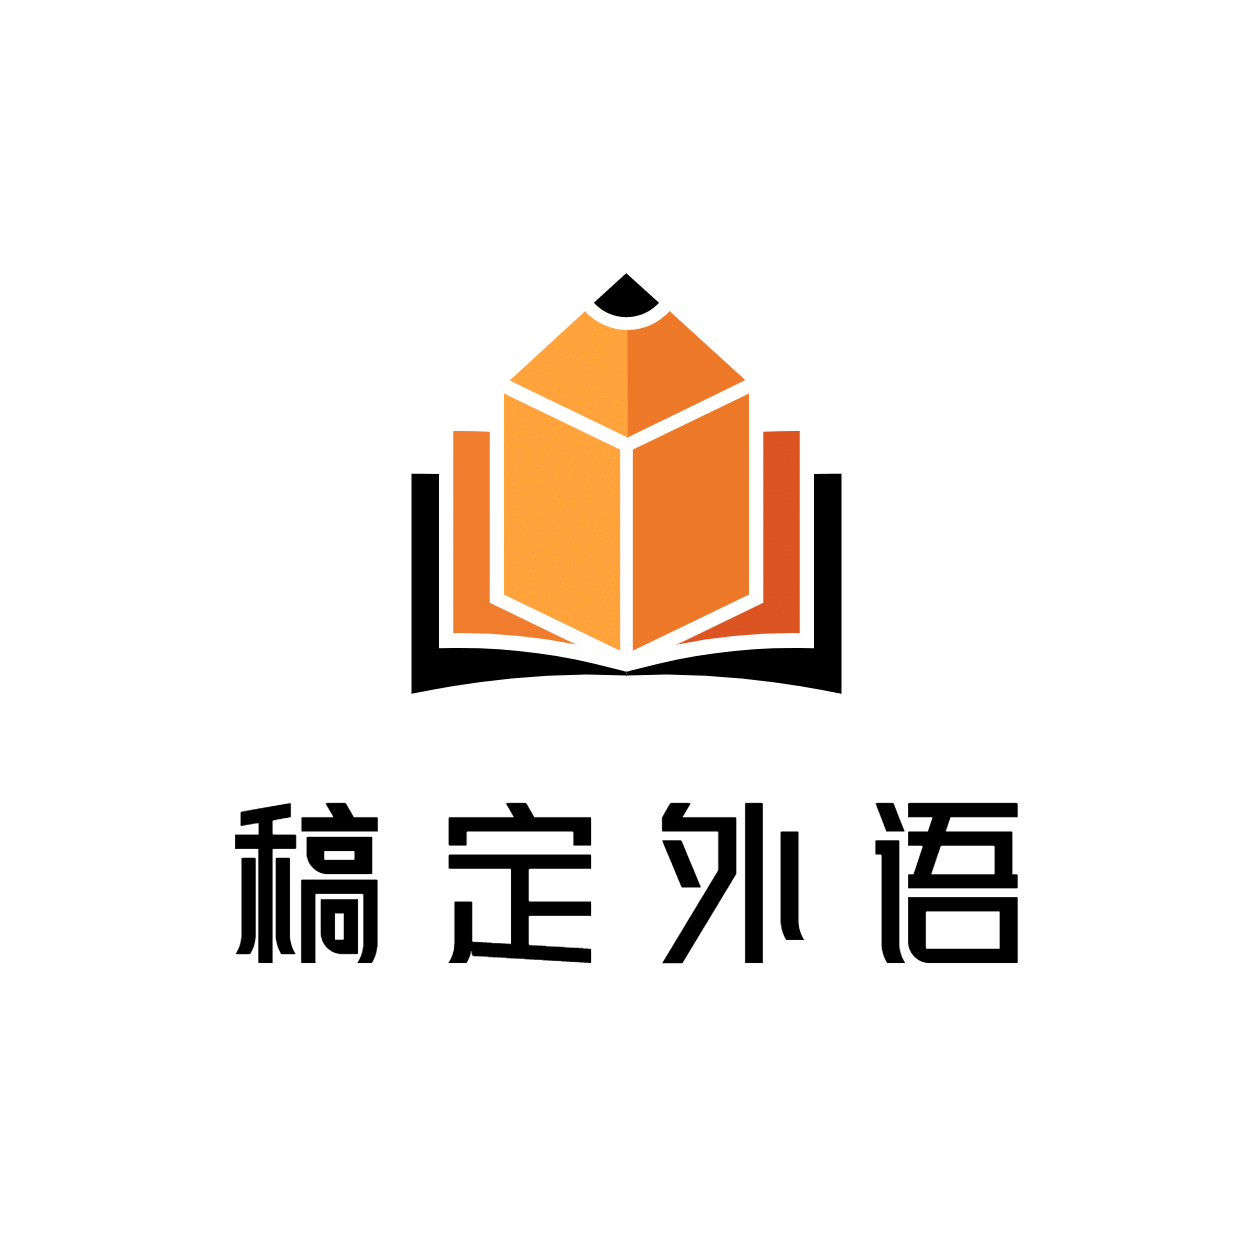 教育创意图形logo